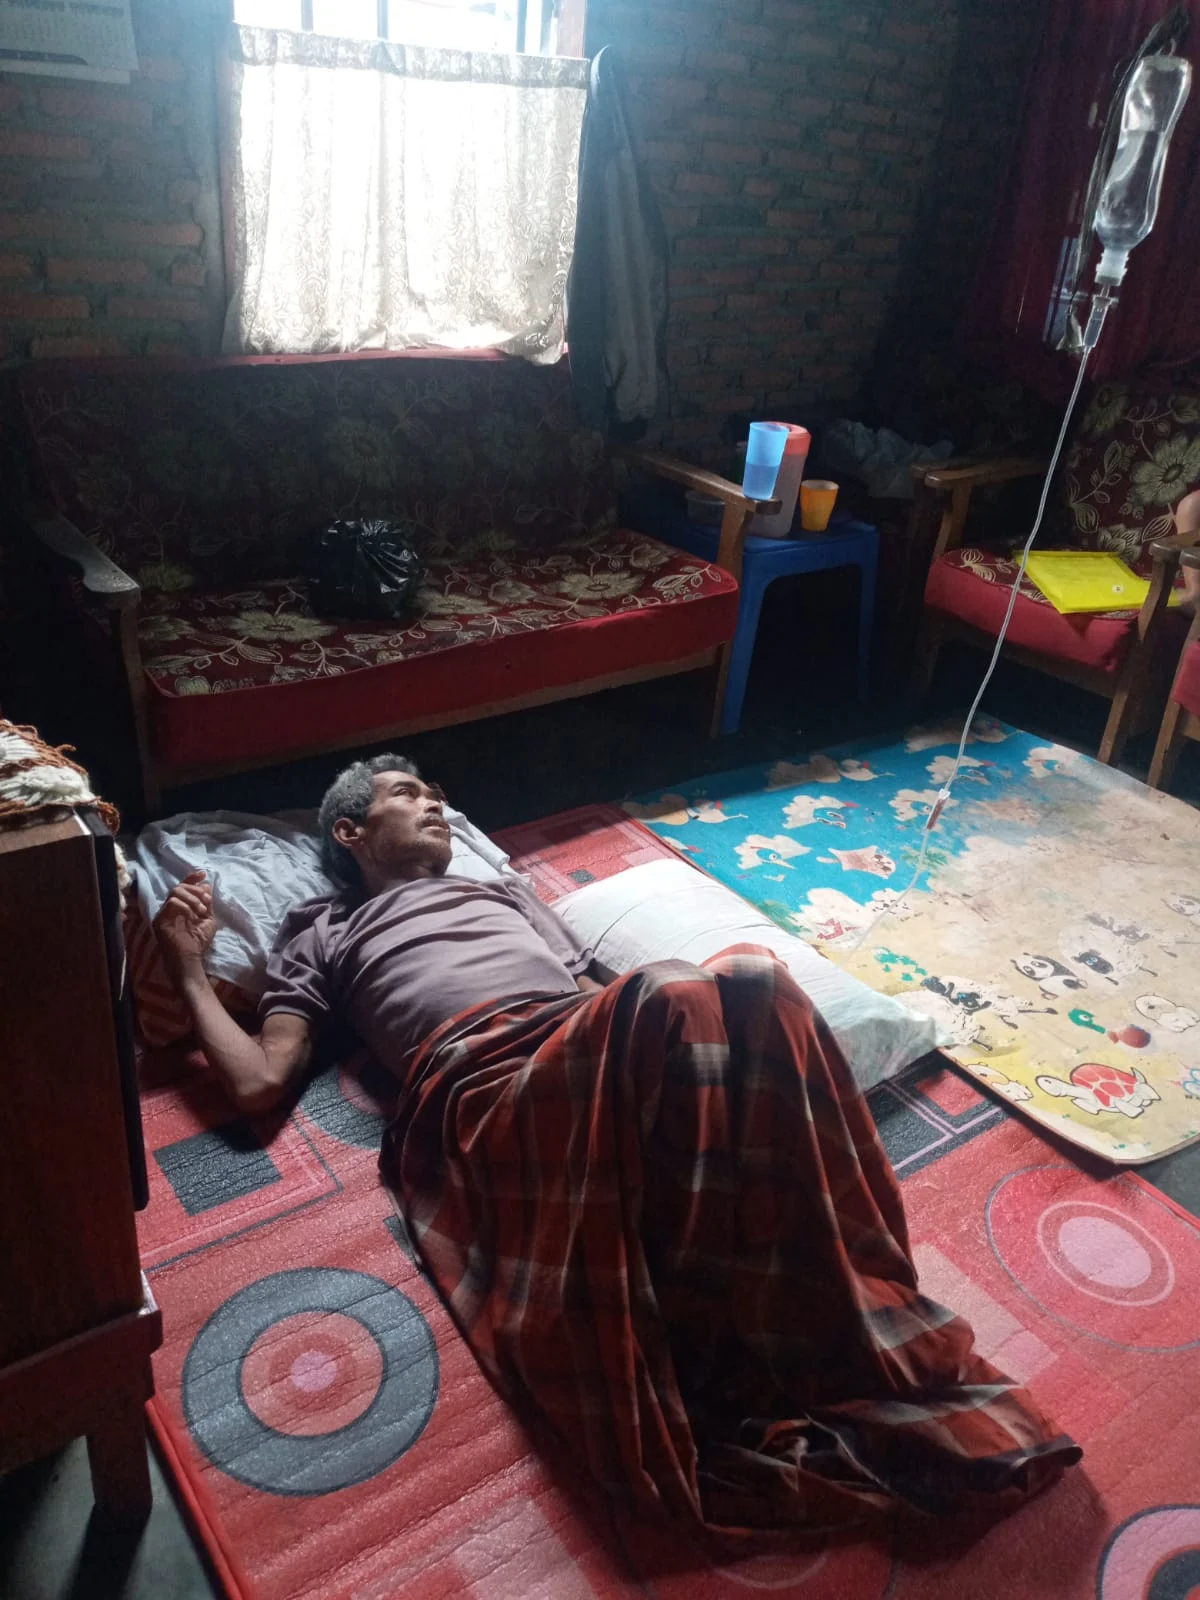 Suhibban tukang becak yang mengidap penyakit tumor terbaring lemas di kediamannya kelurahan sipolu polu, fhoto : istimewa.